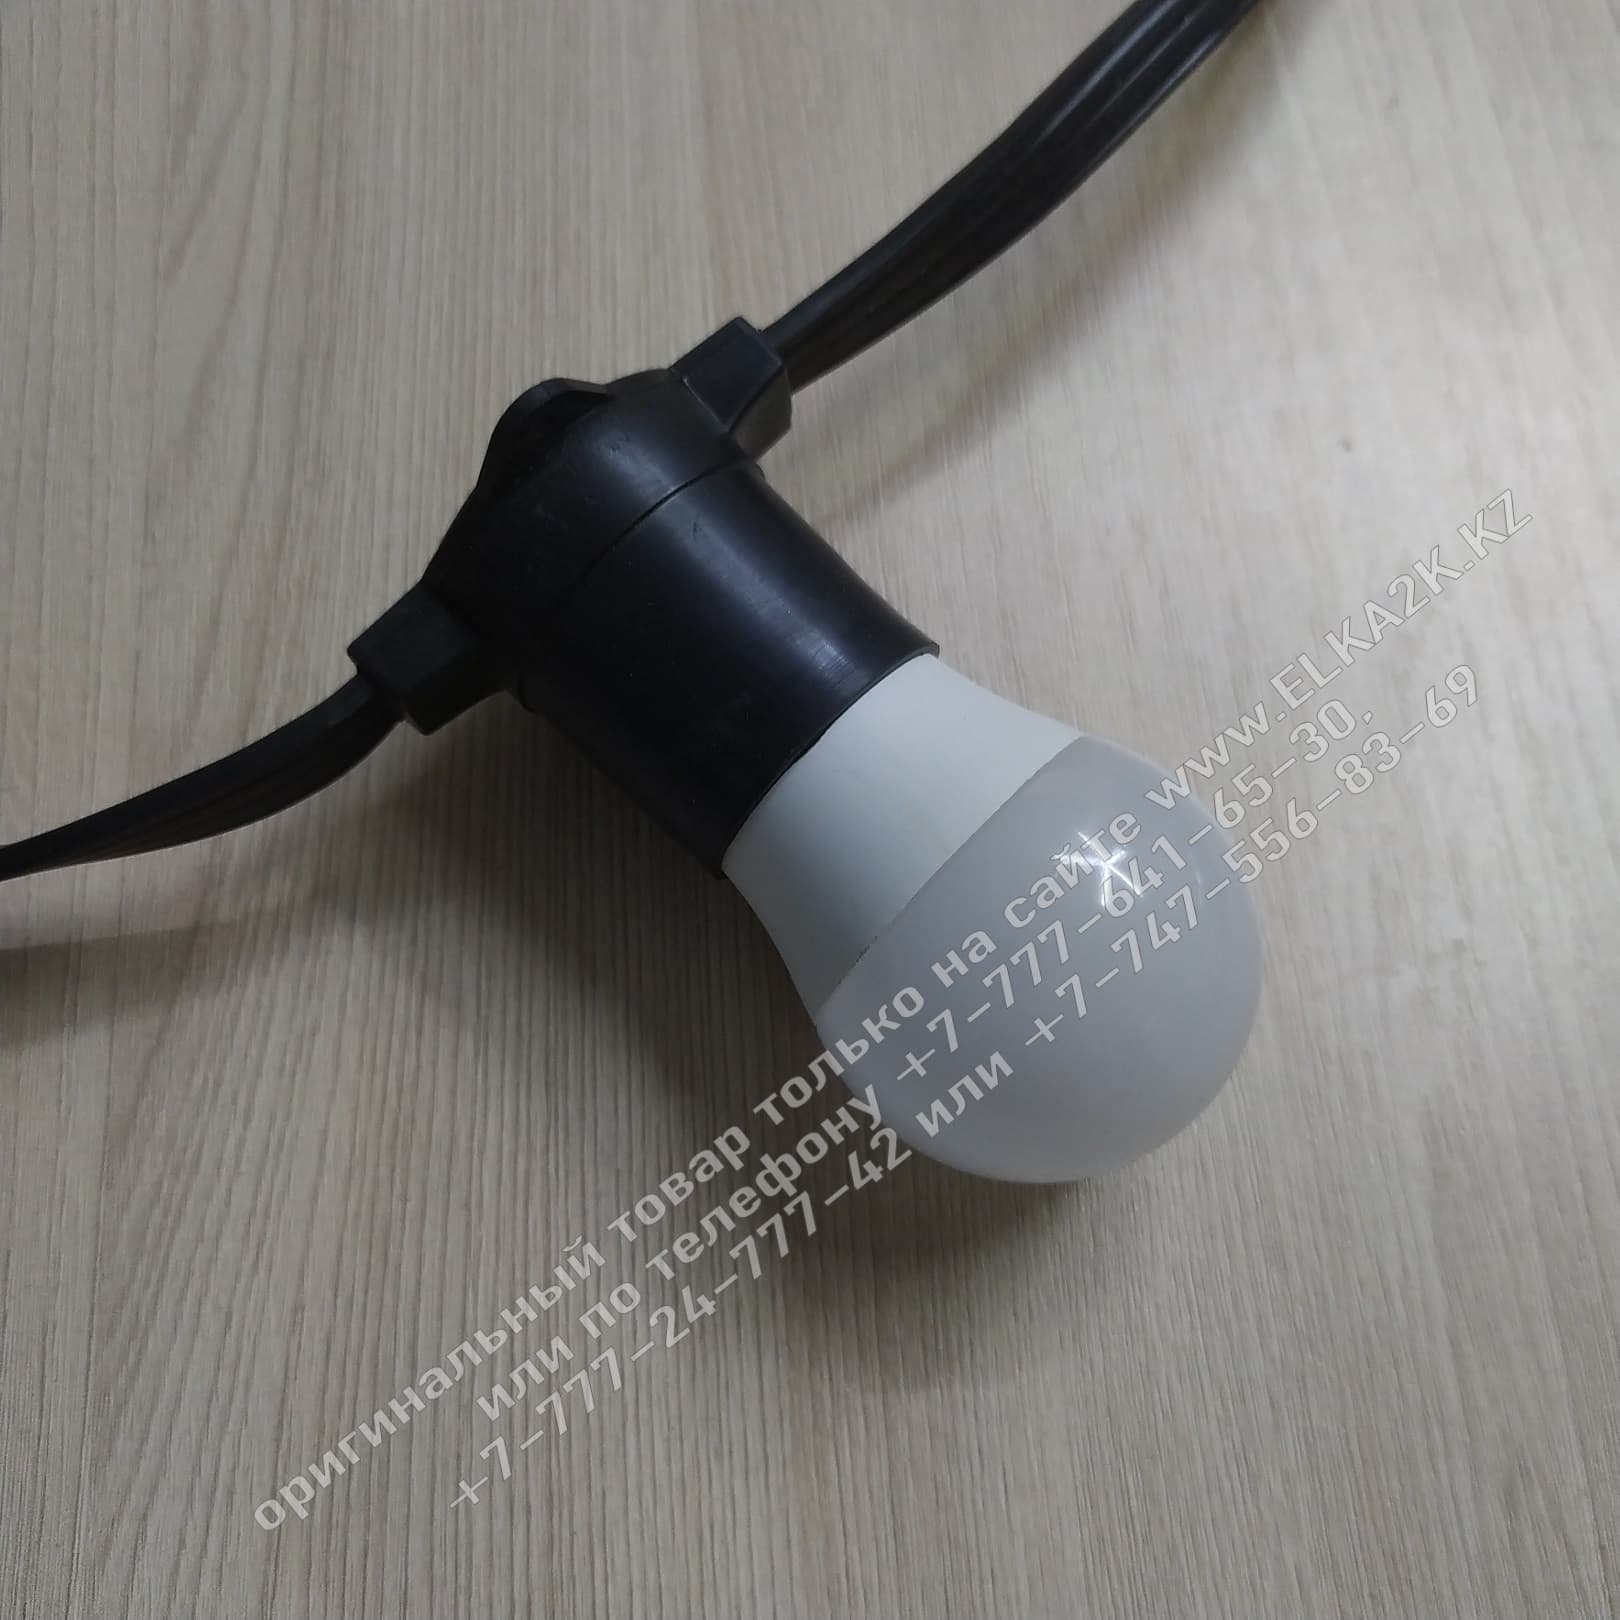 Лампочка светодиодная Е27 мощностью 3W для гирлянды "Белт лайт" (НГ-211) мощность 3w белый